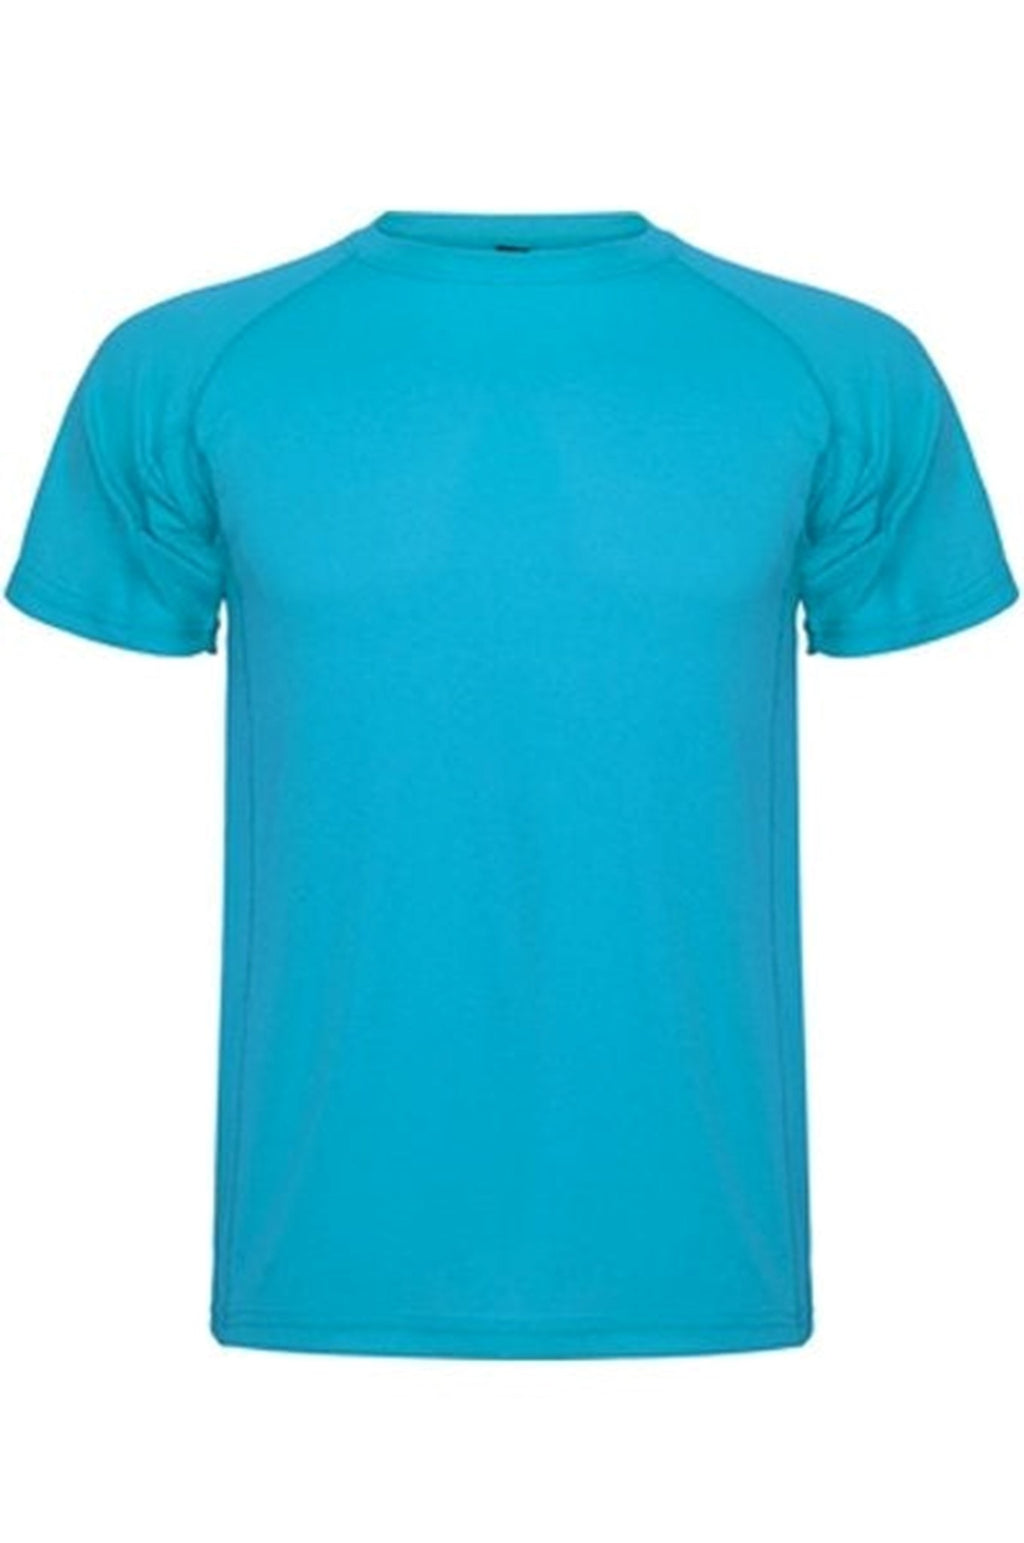 Trenings T-shirt - Turkis blå